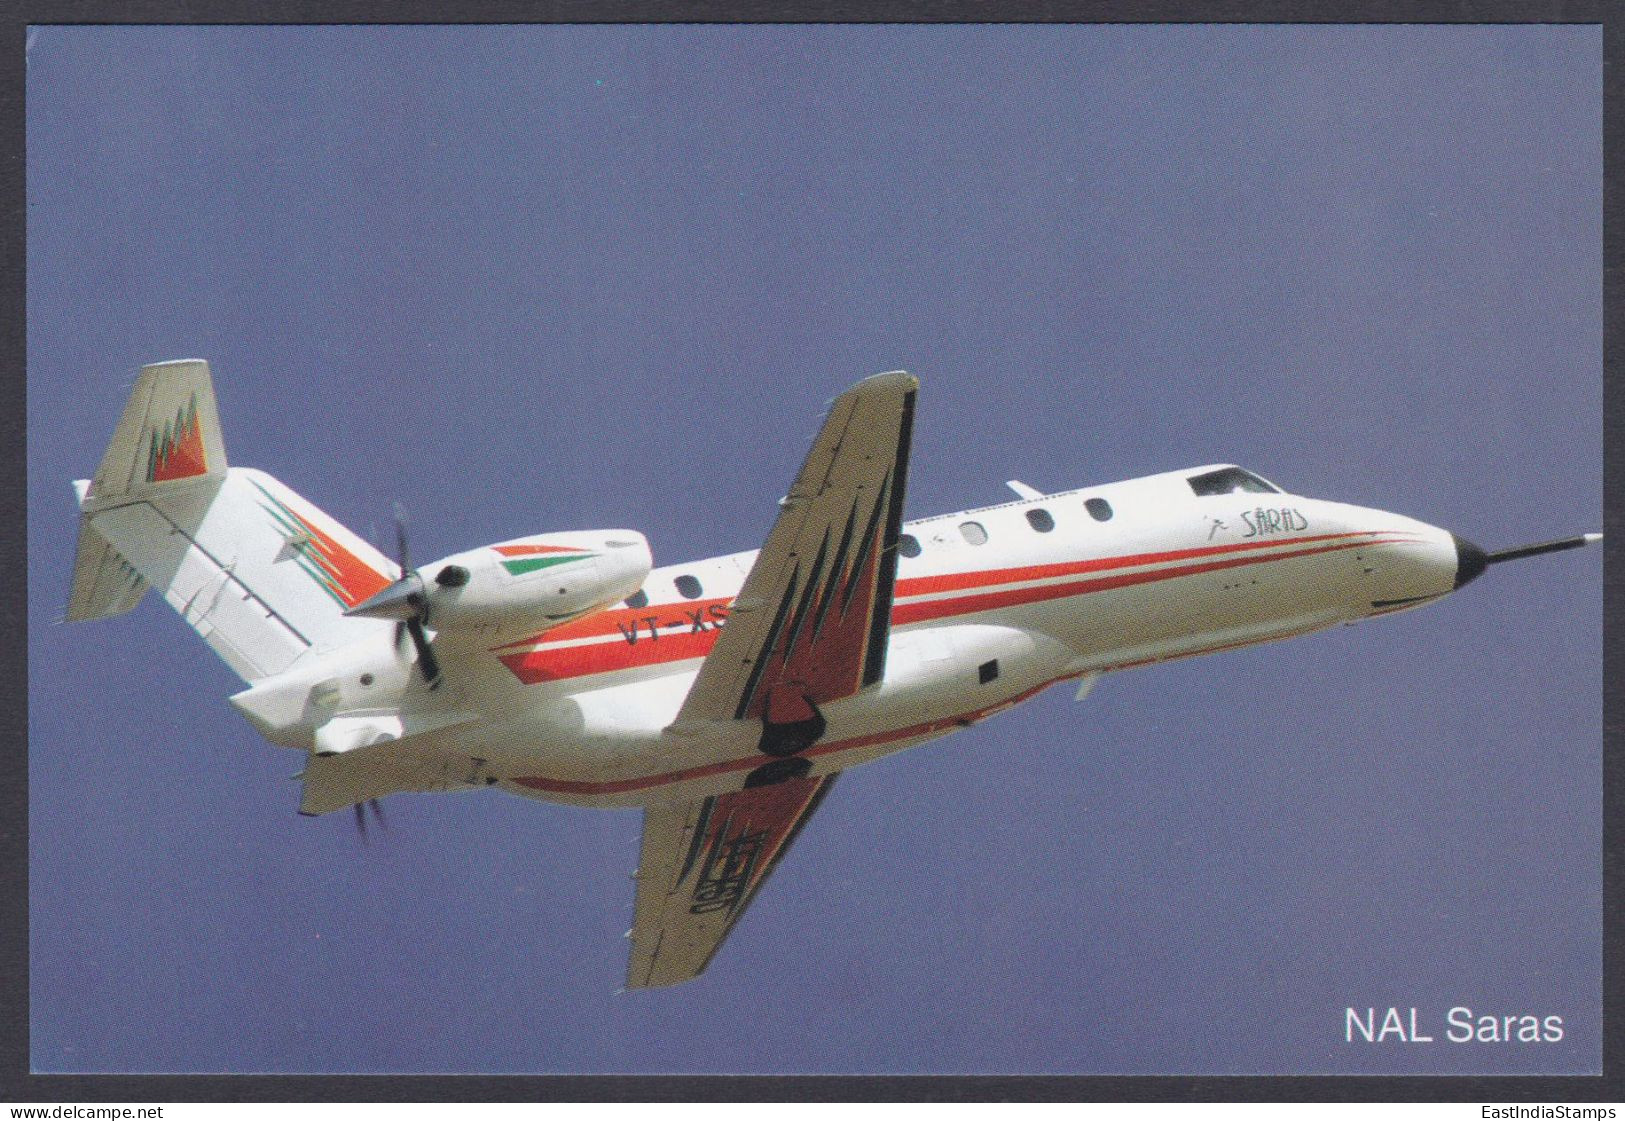 Inde India 2007 Mint Postcard Bangalore Air Show NAL Saras, Aircraft, Aeroplane, Airplane - Inde